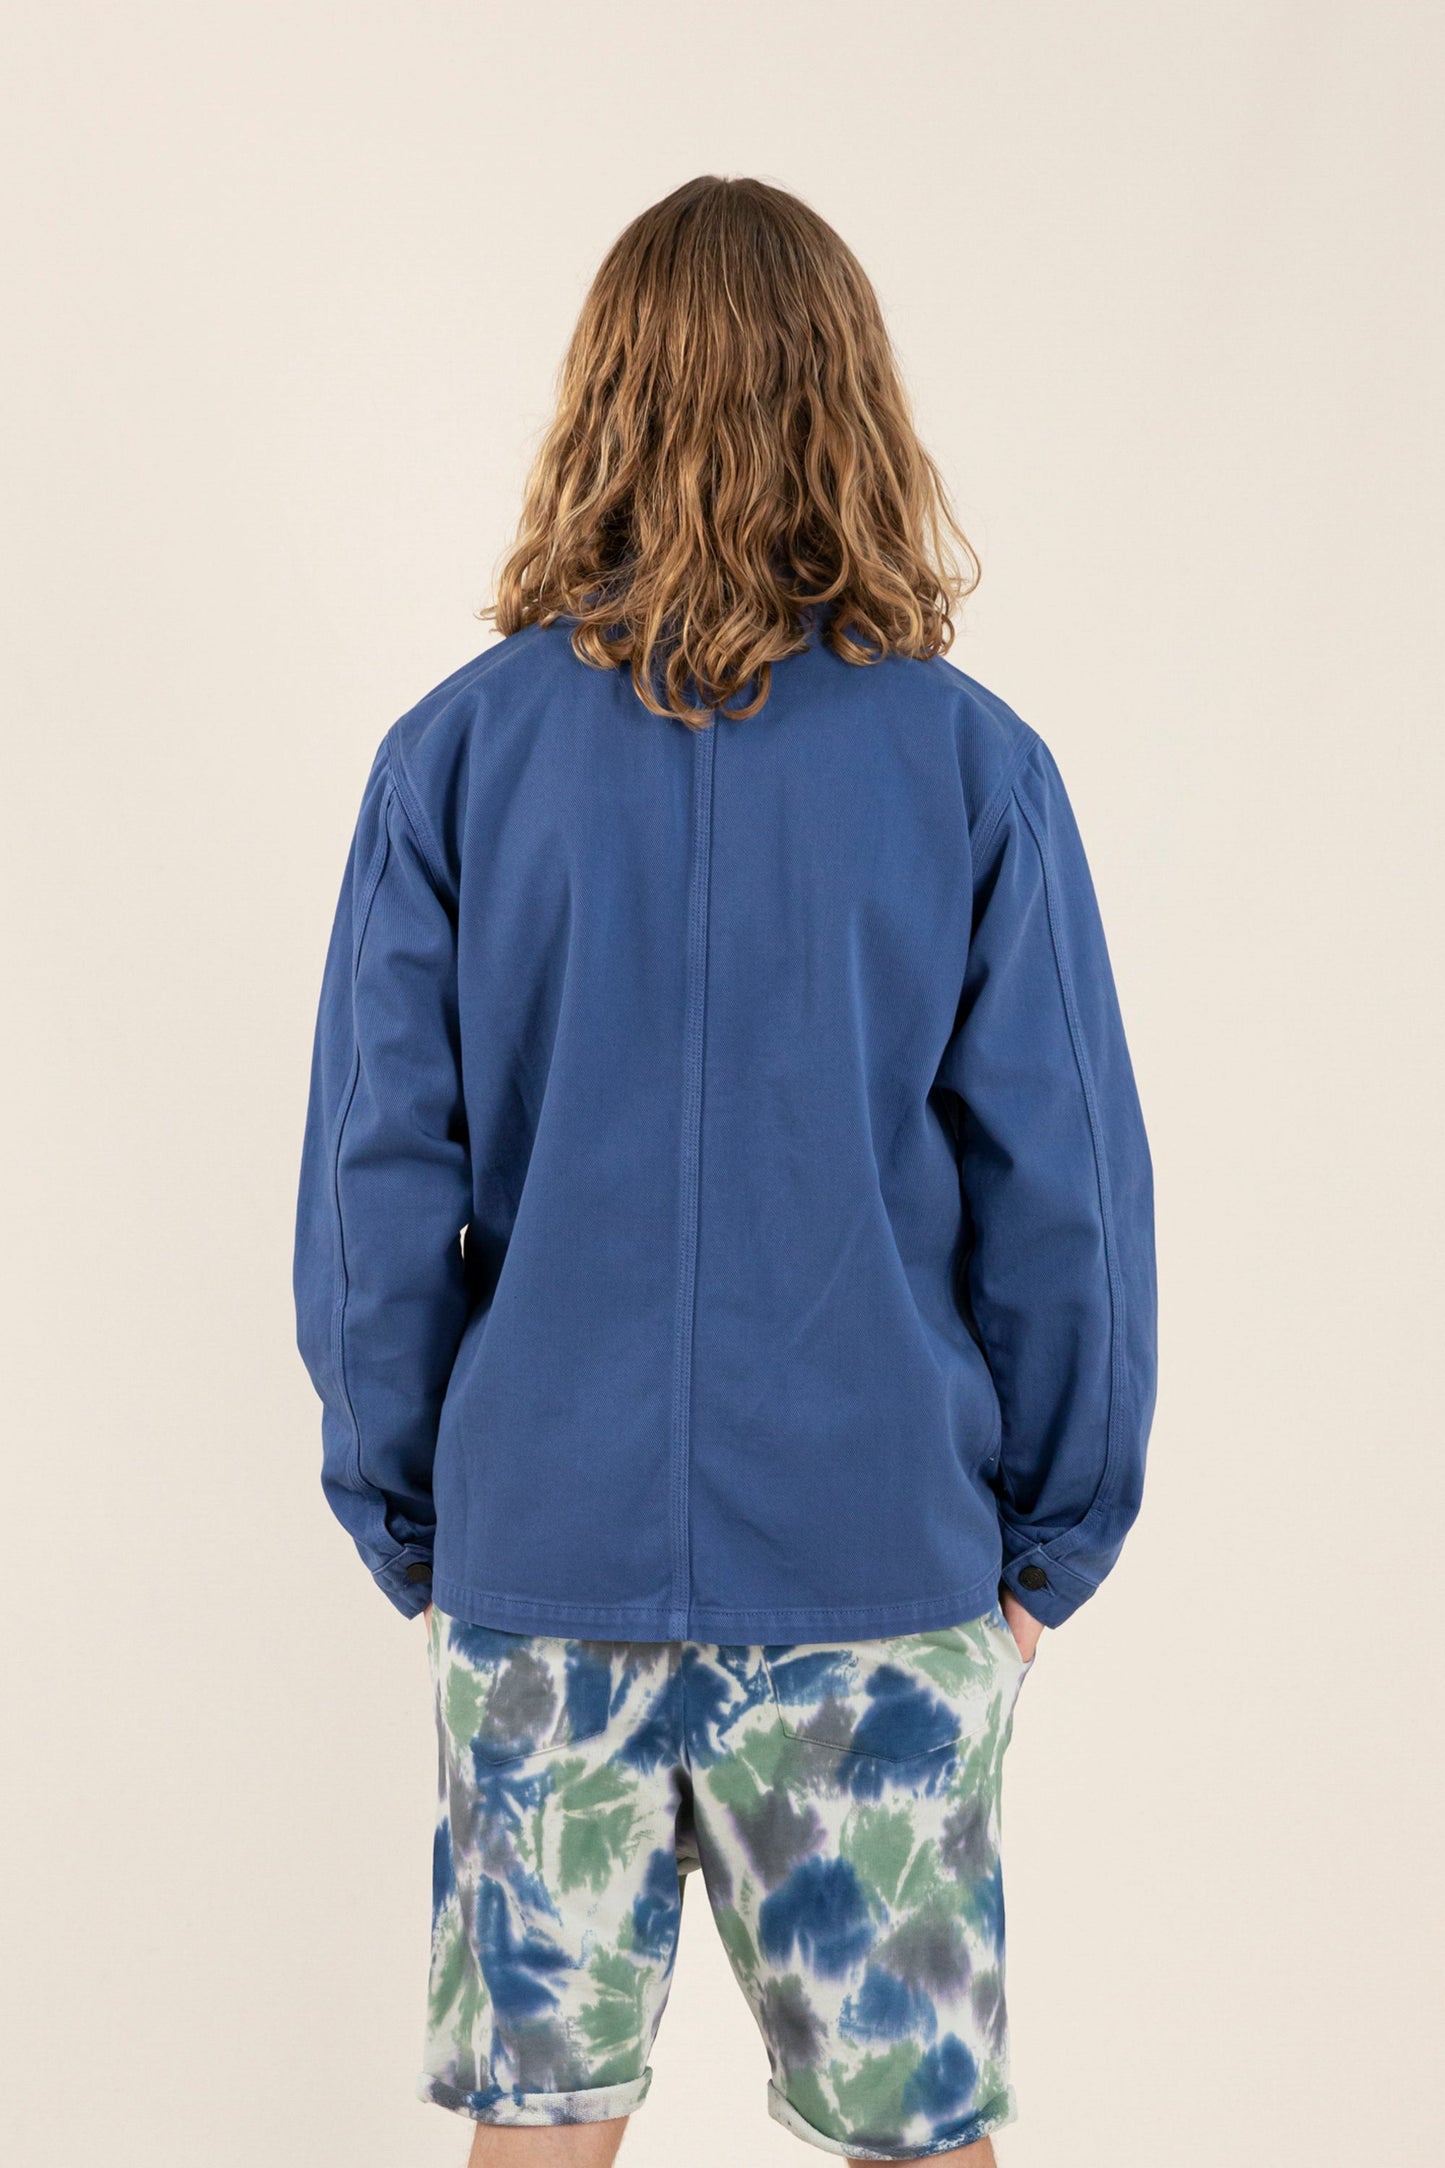 WARREN Work Blue - Multi-pocket Jacket | Women